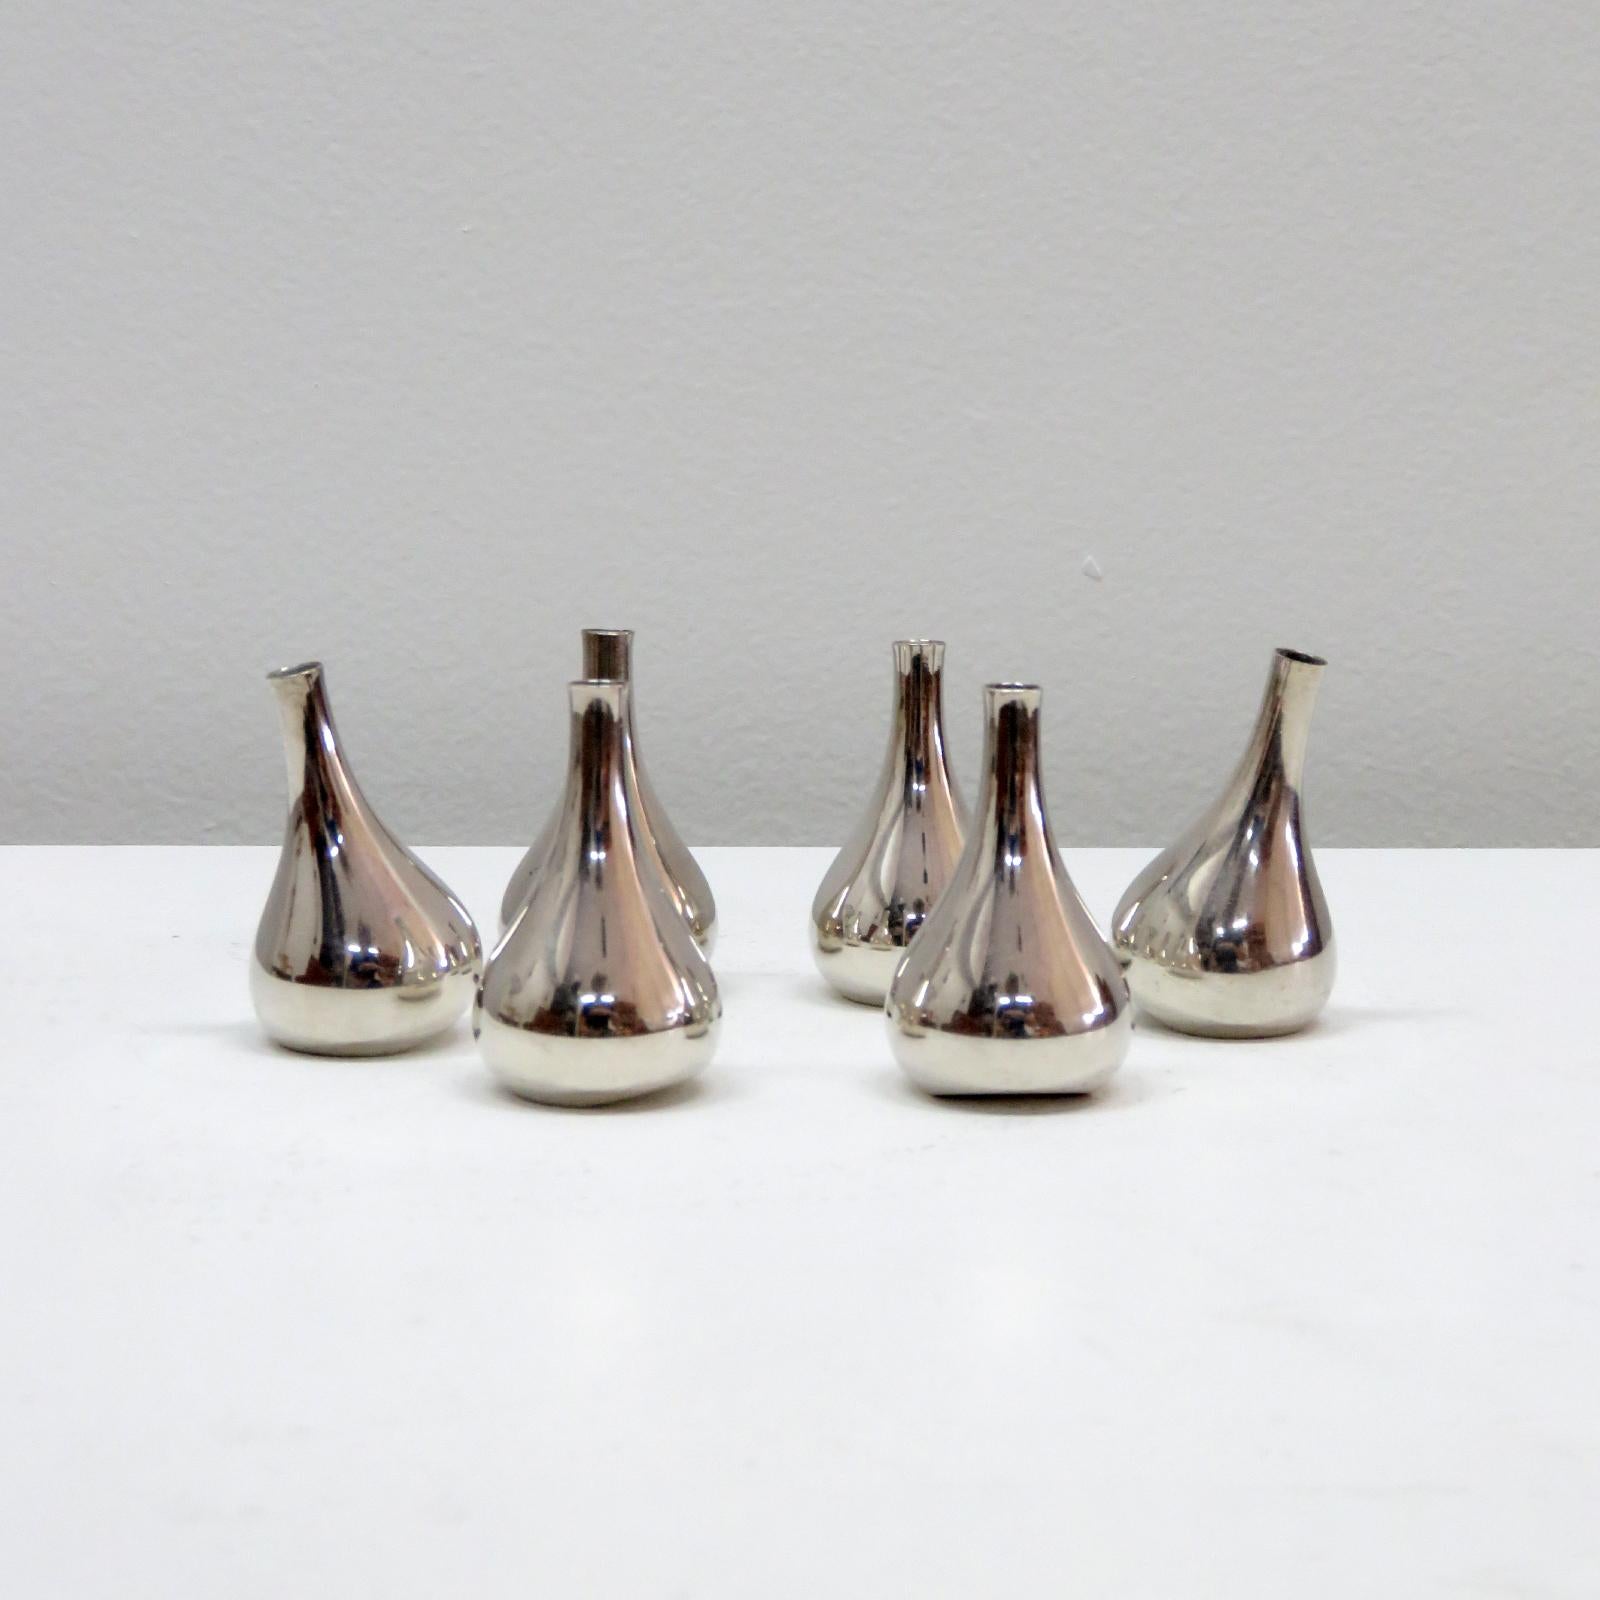 Wunderschöner Satz von sechs tropfenförmigen Kerzenhaltern von Jens Quistgaard für Dansk, ca. 1960er Jahre, aus versilbertem Metall. Ideal für spitz zulaufende 1/4